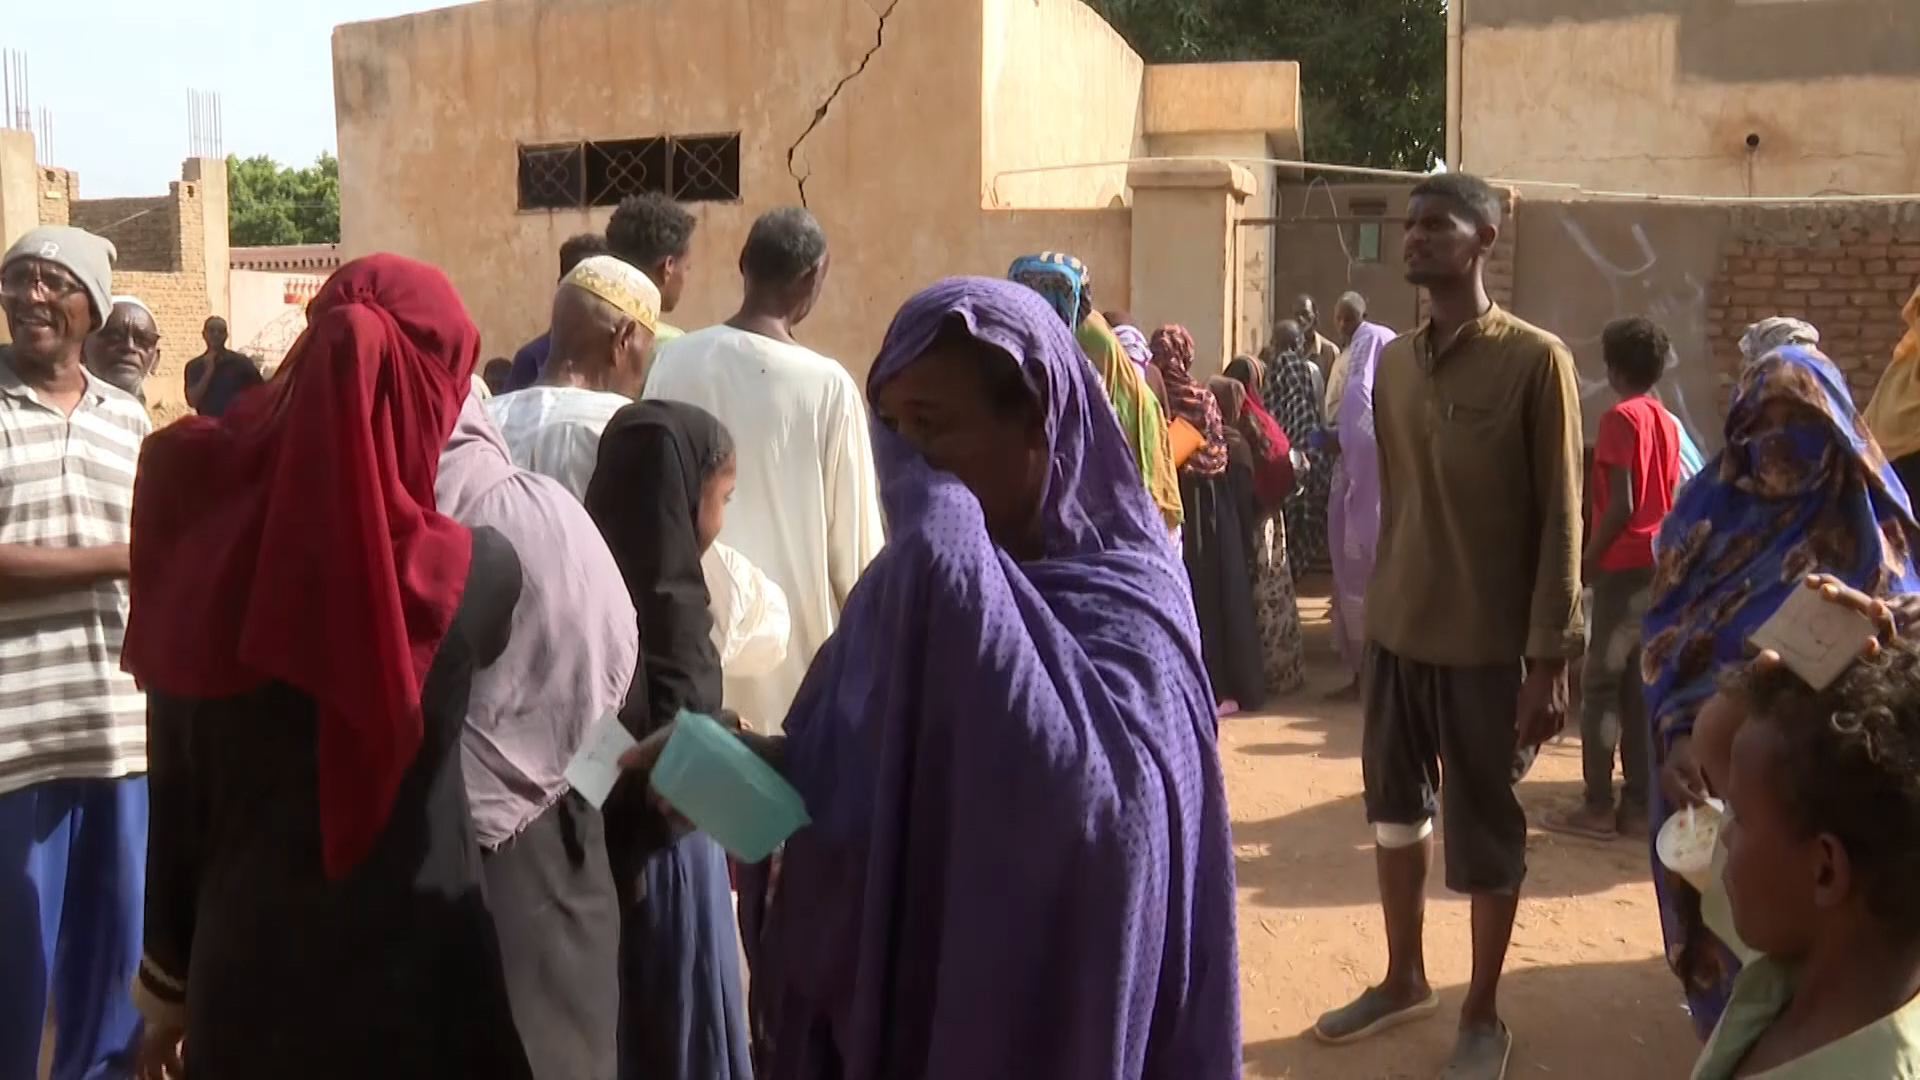 نصف سكان السودان يعانون من الجوع وسوء التغذية بسبب الحرب | التقارير الإخبارية – البوكس نيوز